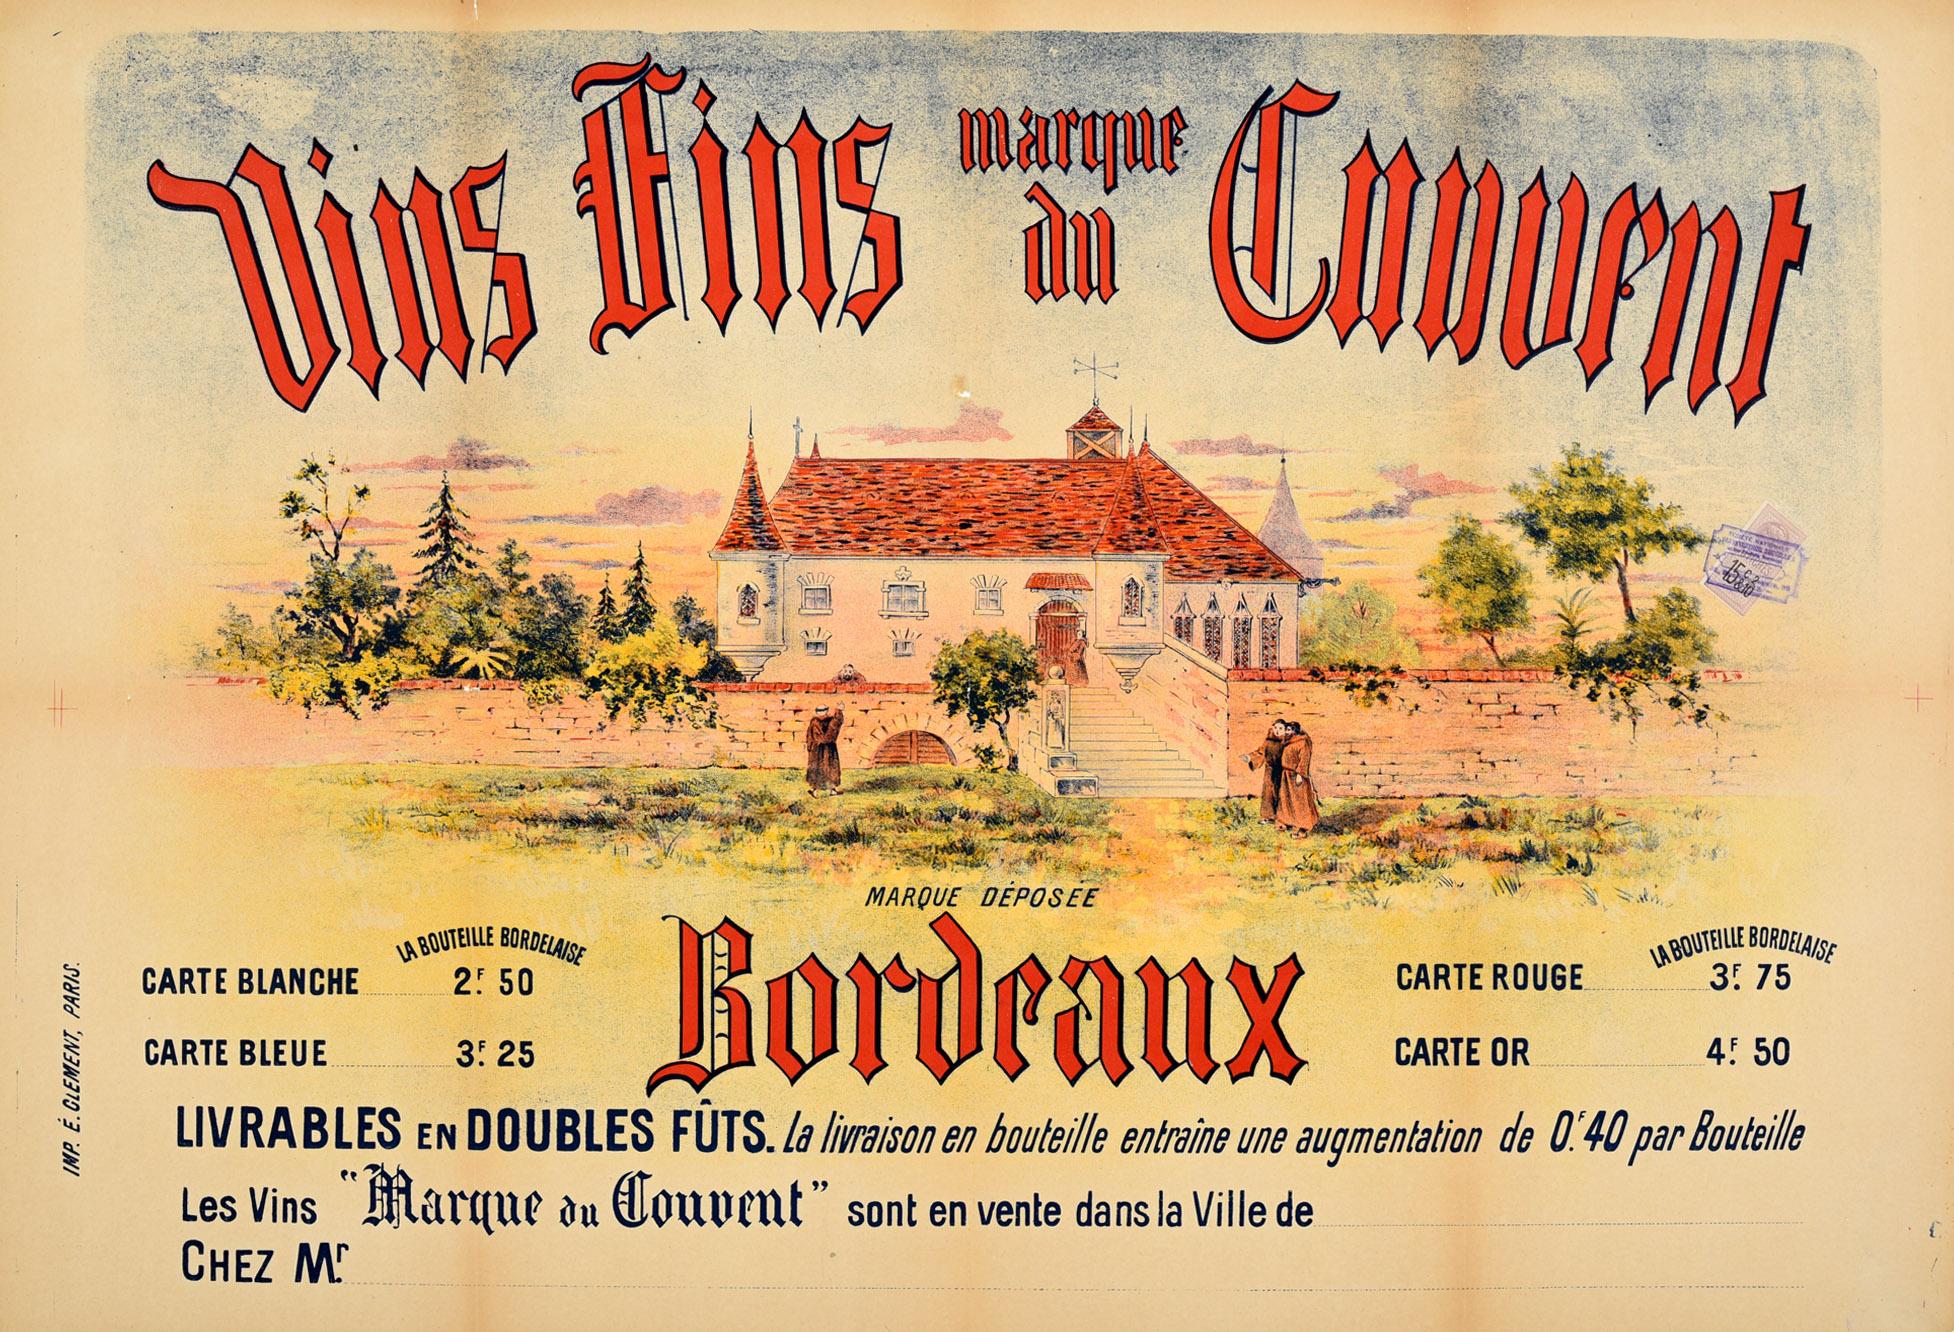 Unknown Print - Original Antique French Bordeaux Wine Poster Vins Fins Marque Du Convent France